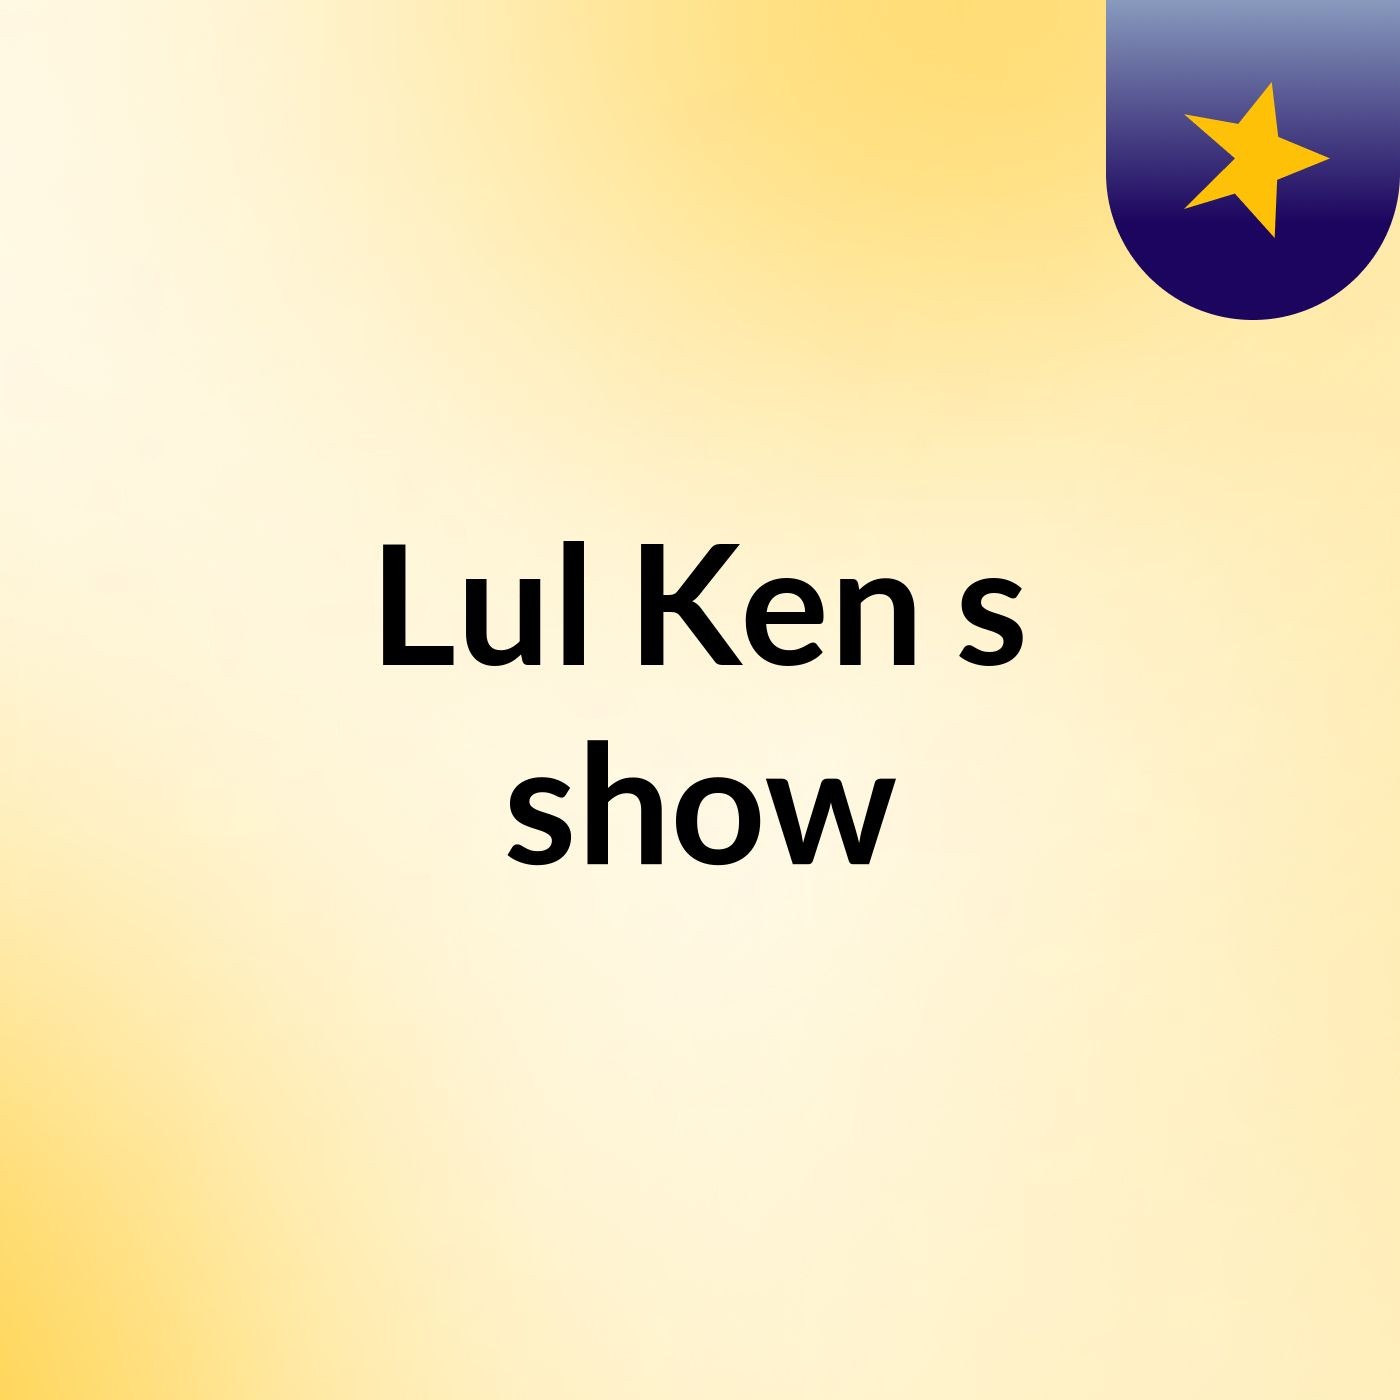 Episode 4 - Lul Ken's show